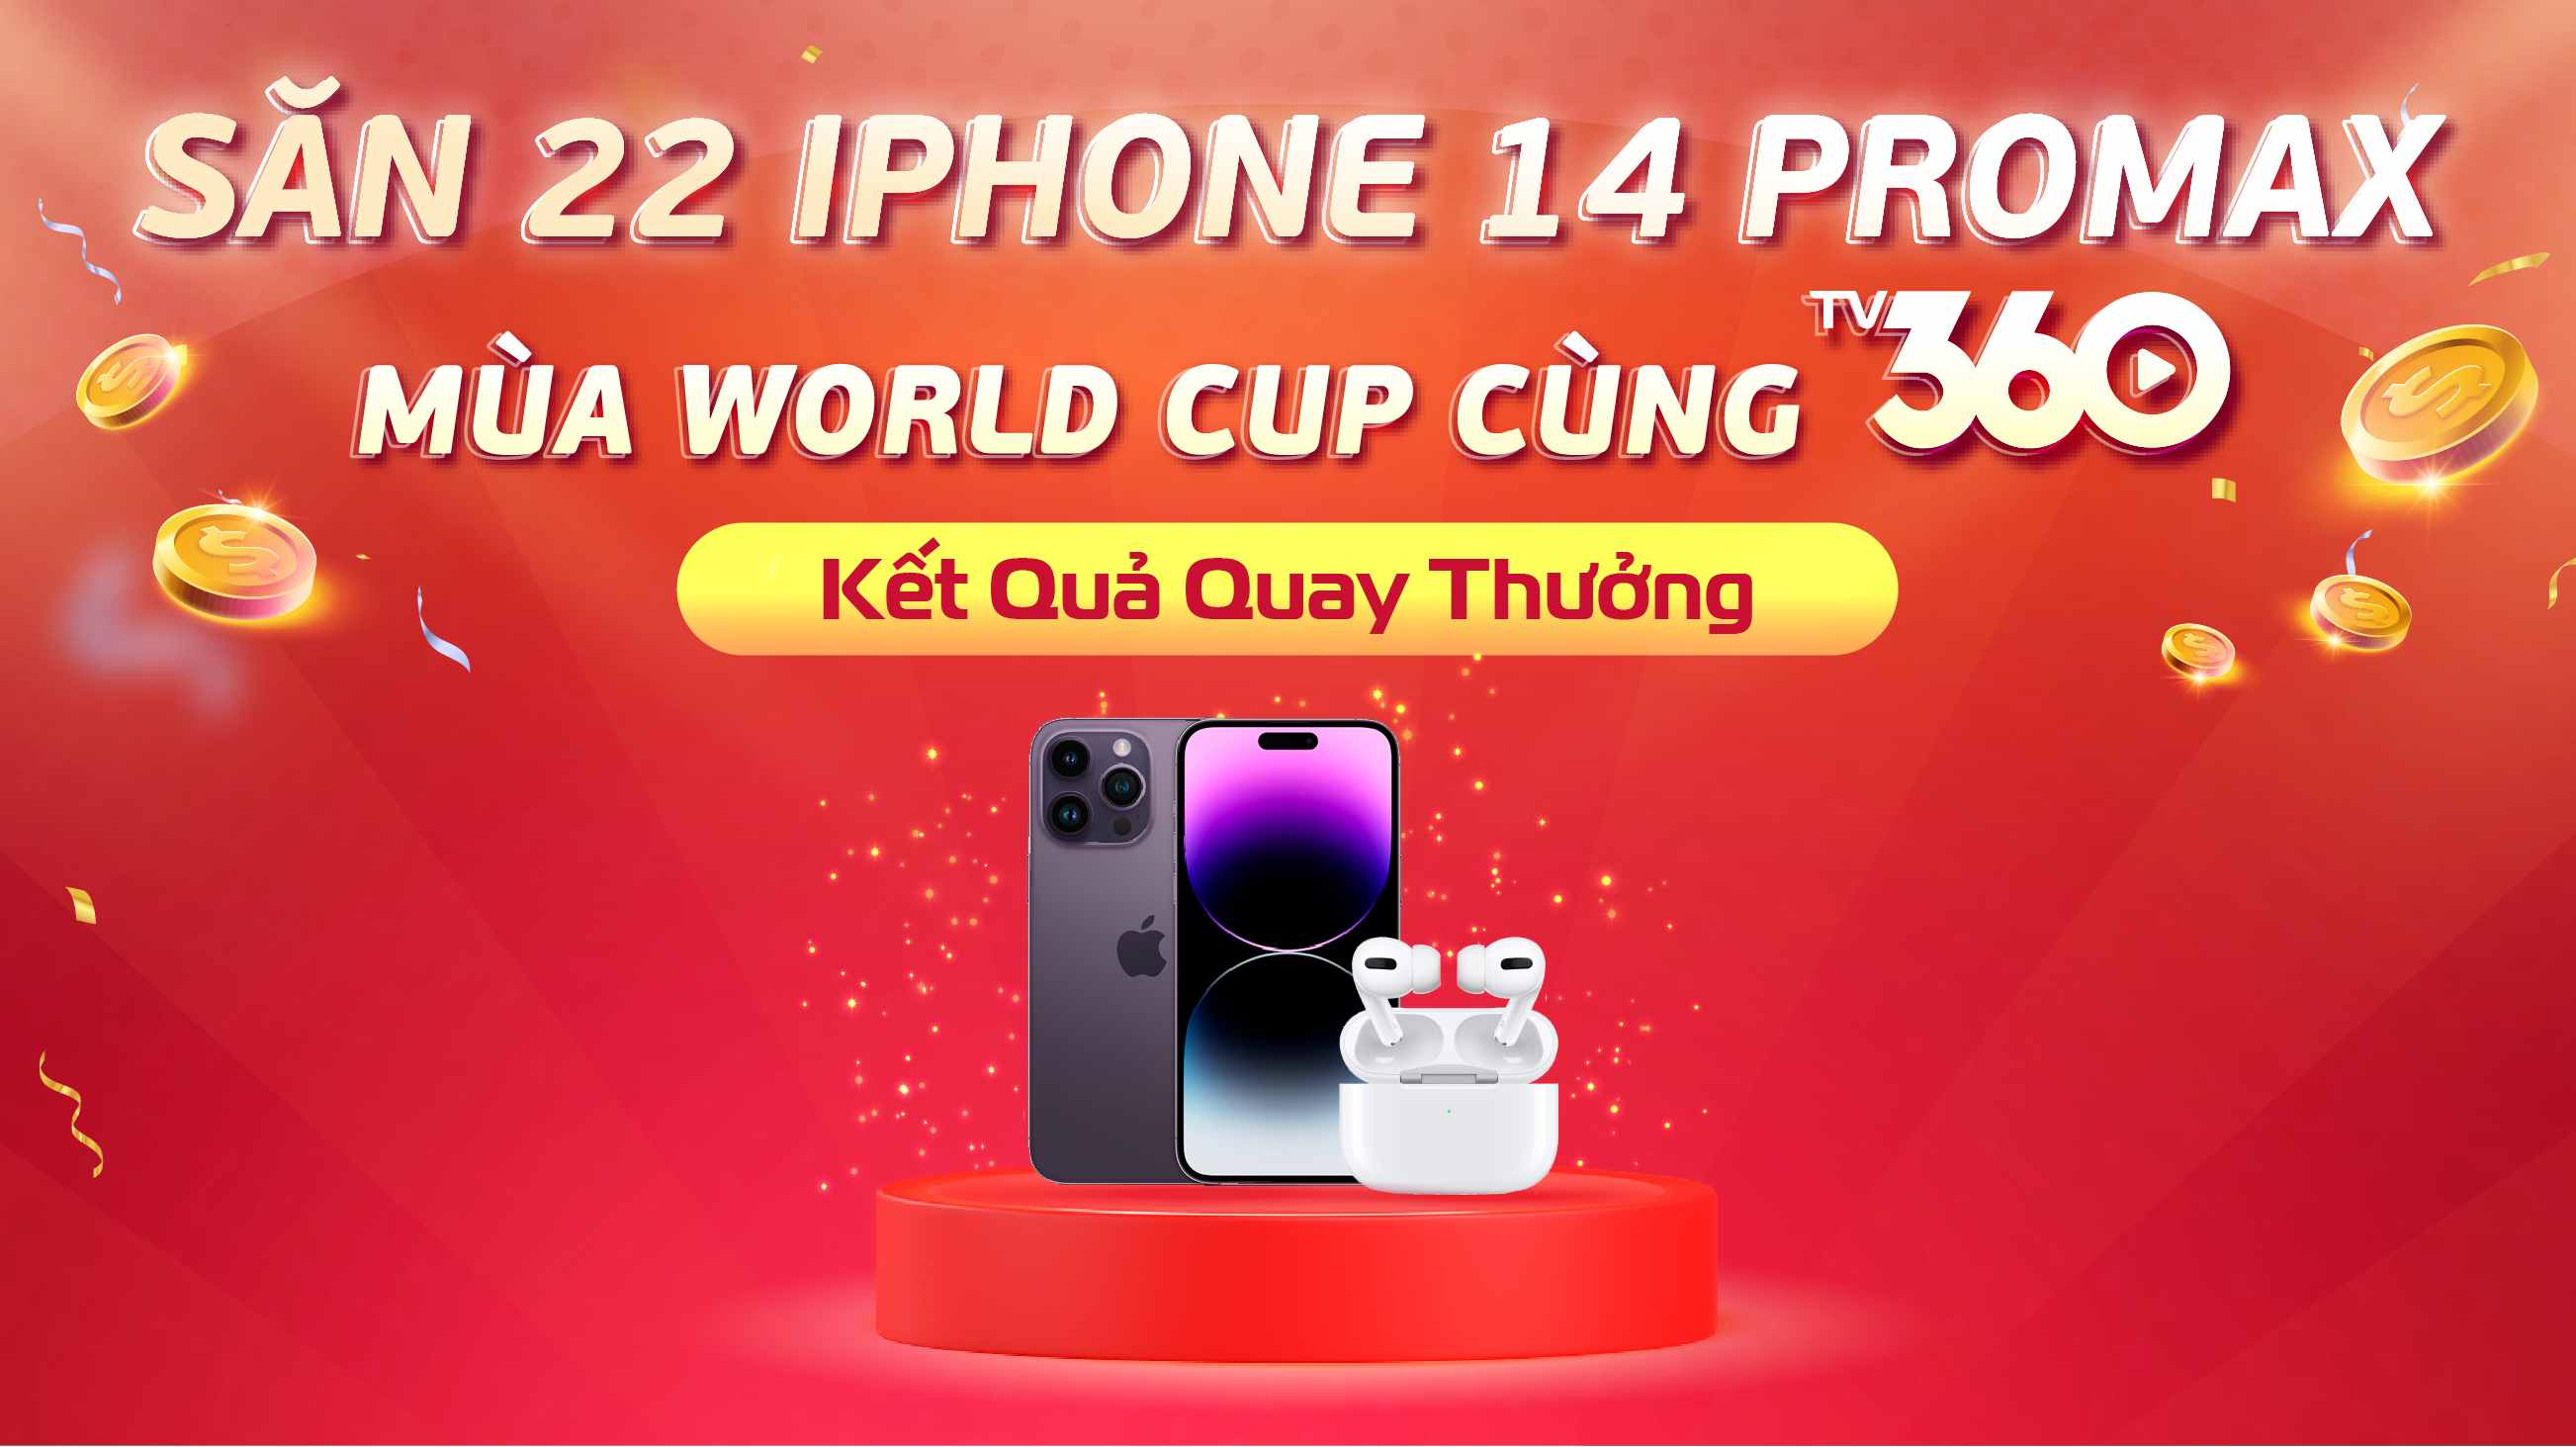 CÔNG BỐ KẾT QUẢ CHƯƠNG TRÌNH “SĂN 22 IPHONE 14 PROMAX MÙA WORLD CUP CÙNG TV360”